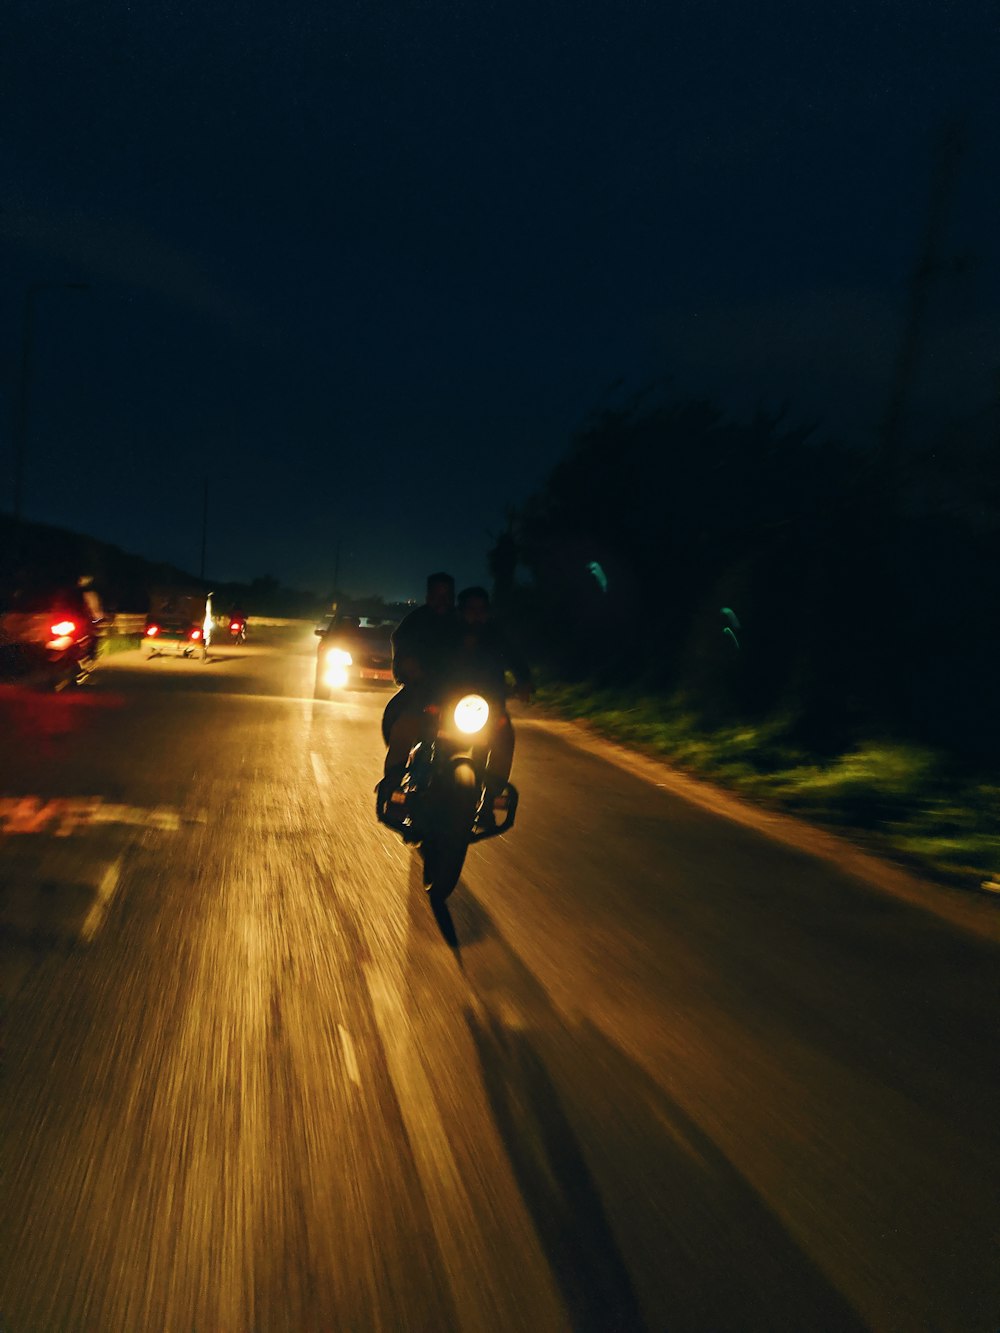 motorcycle at night